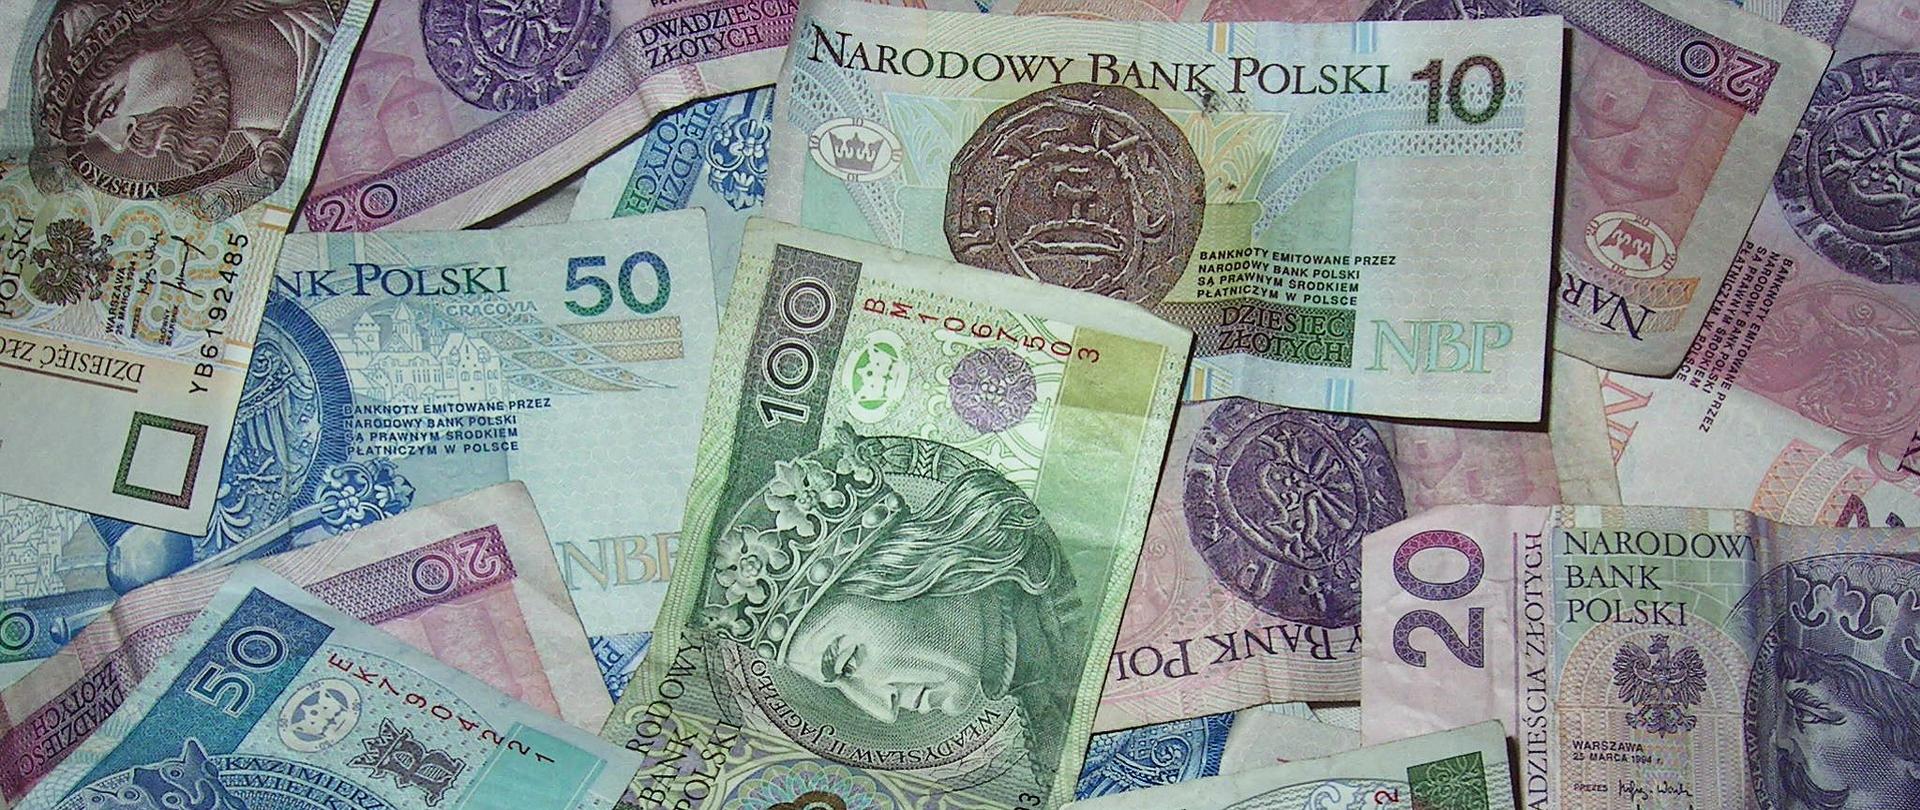 pieniądze - zdjęcie ilustracyjne